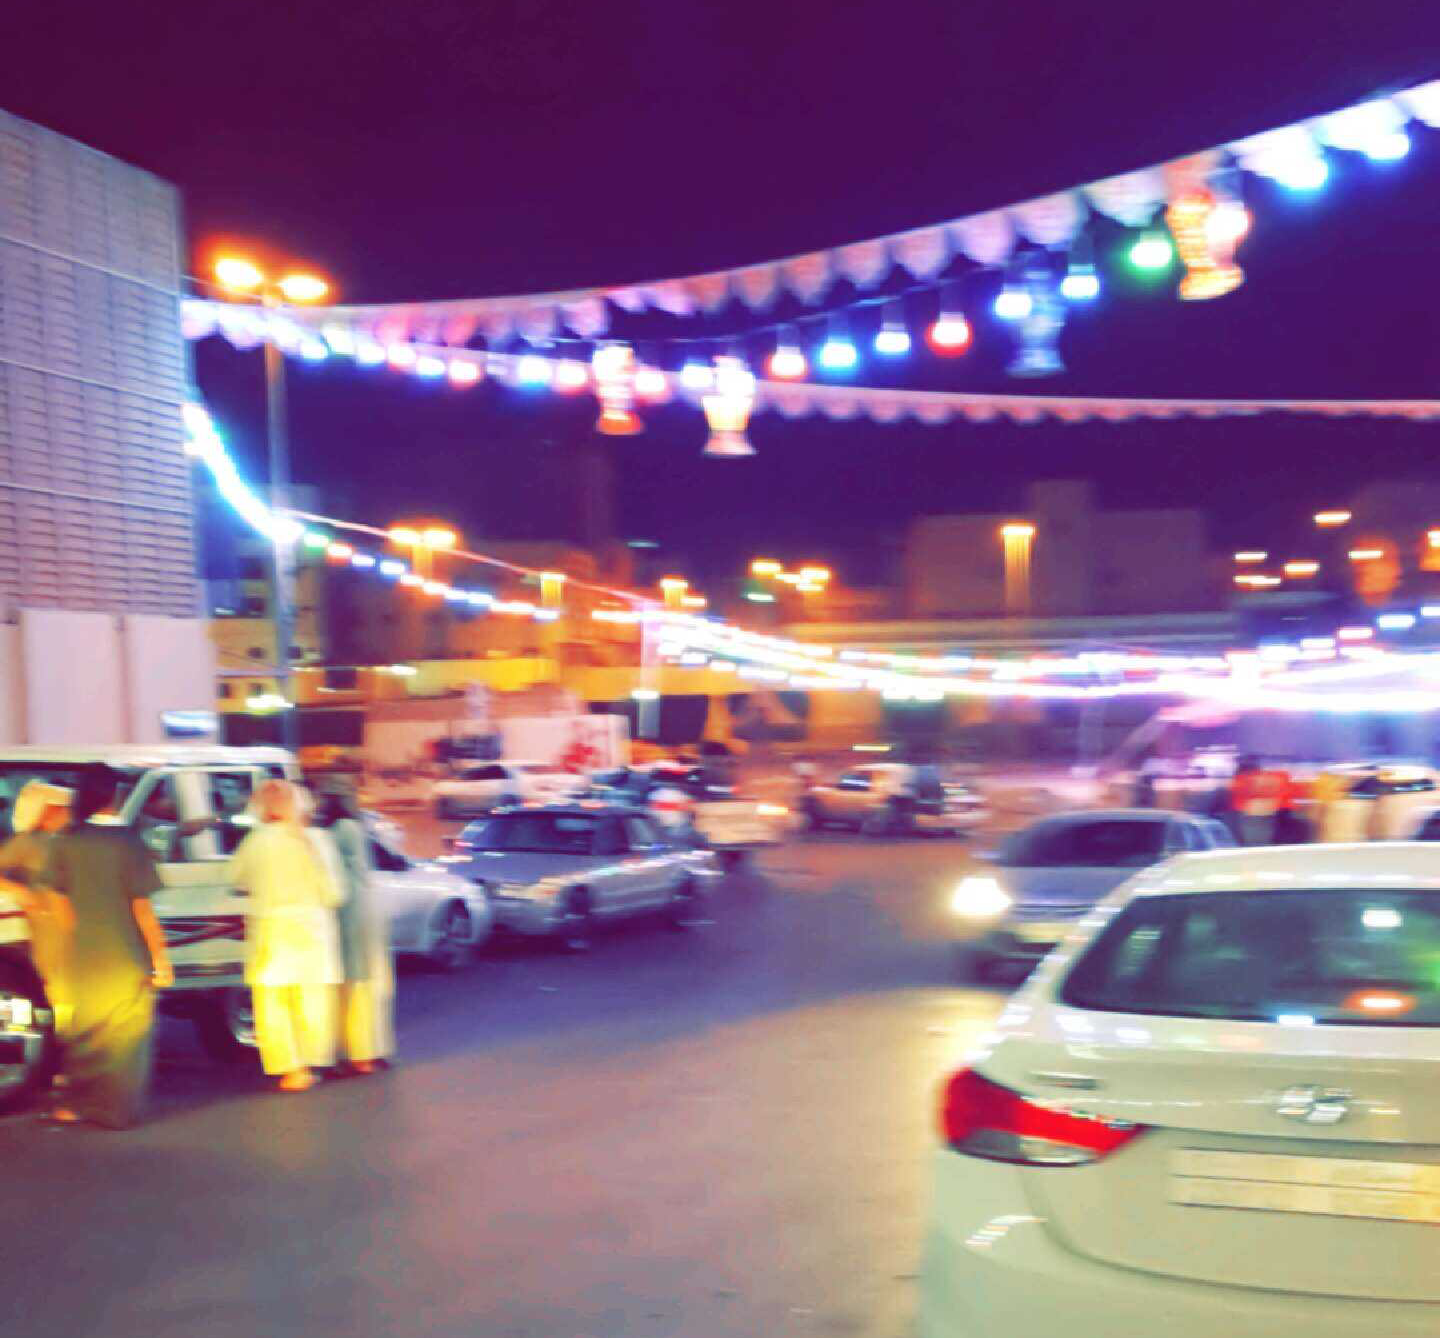 بالصور.. كيف استقبل أهالي حي ريان الطائف شهر رمضان؟